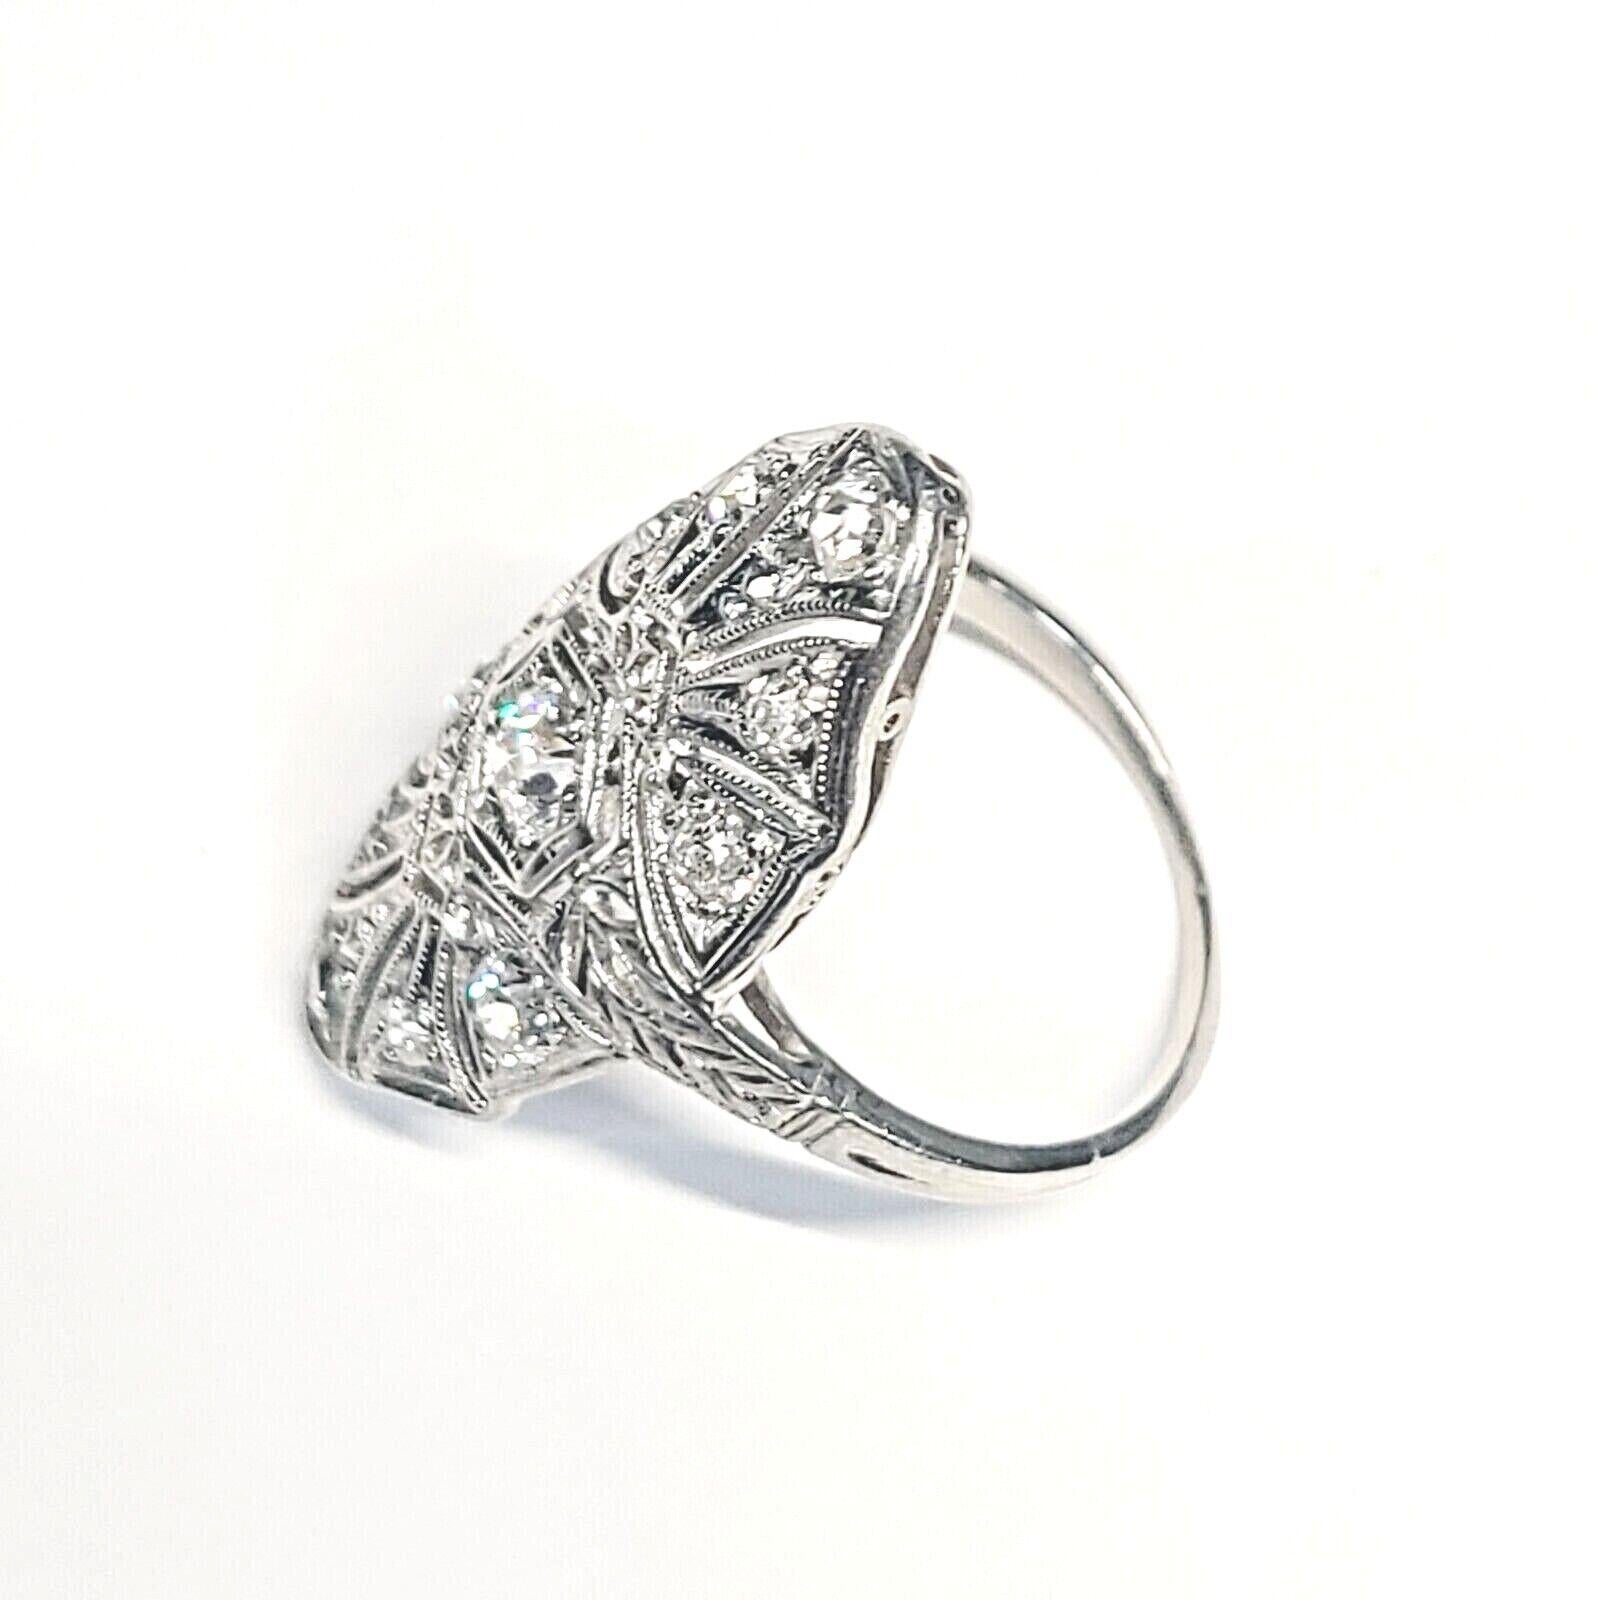 Vorstellen einer:

Antike Platin Navette 1ctw Diamant Ring Größe 4,75.

Der Ring ist aus massivem Platin im Navette-Stil mit filigranem Design.

Mit funkelnden, glänzenden natürlichen Diamanten im Altminenschliff besetzt.

Die Mitte Diamant ist etwa